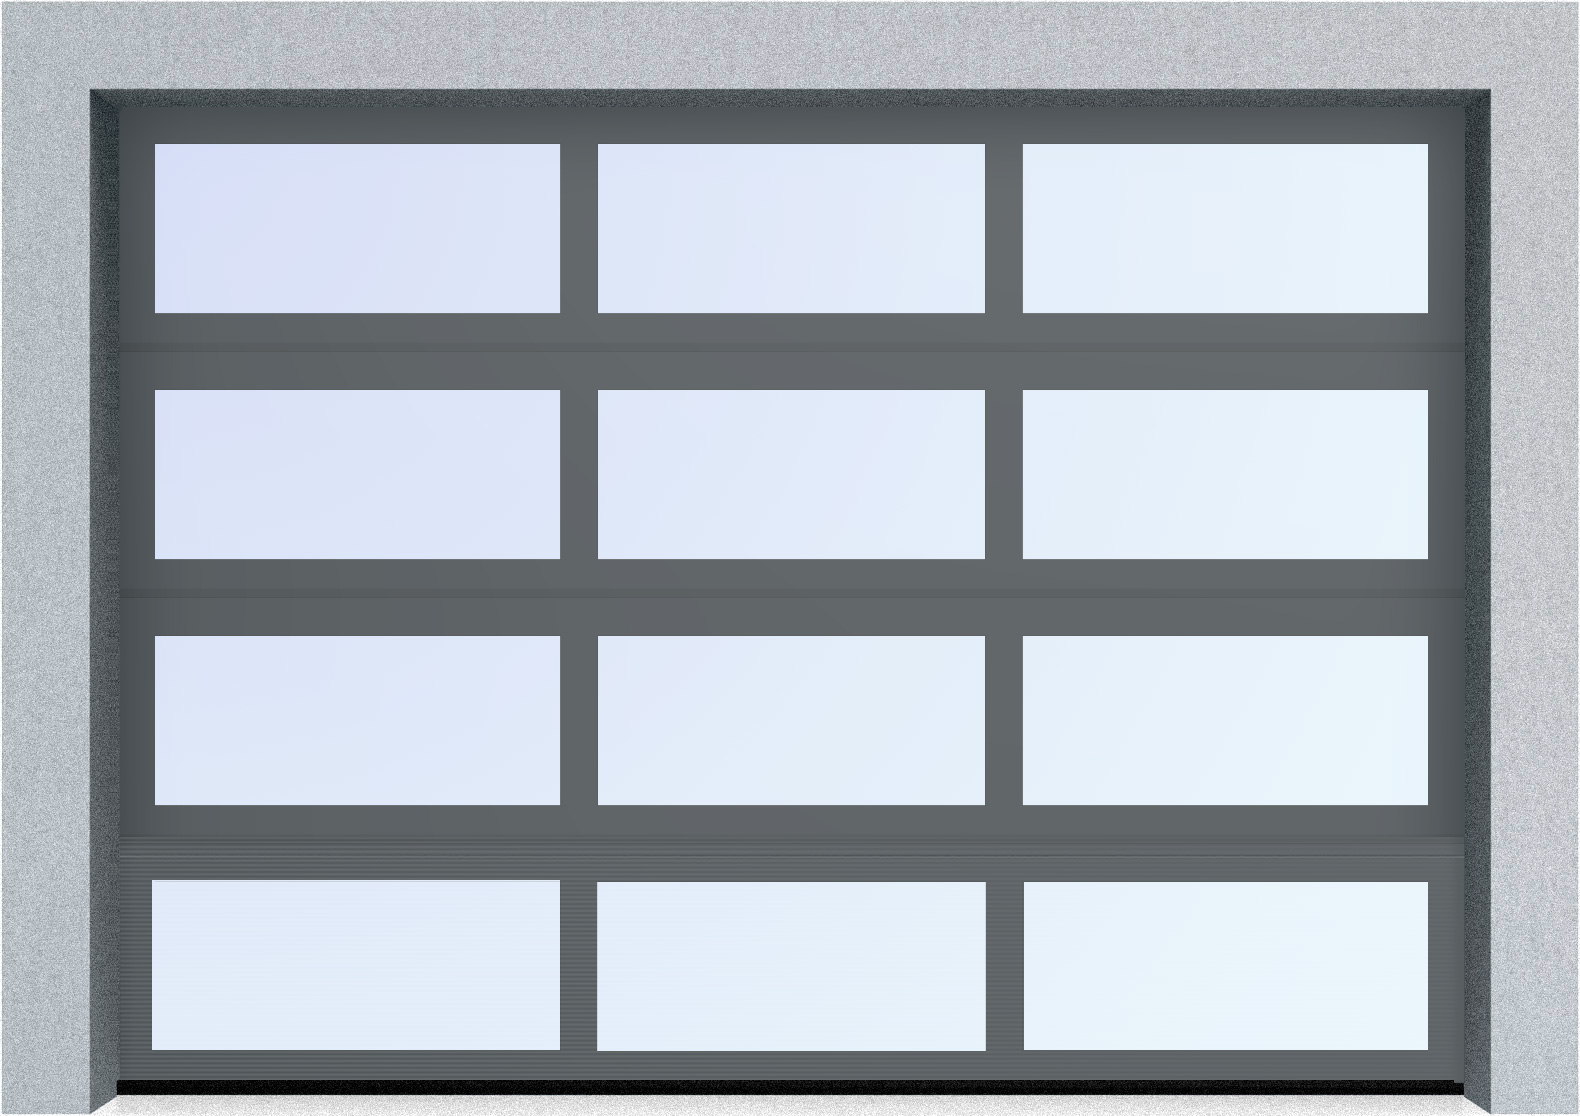  Секционные панорамные ворота серии AluTrend (АЛП) 5000х4500 нижняя панель стандартные цвета, фото 5 